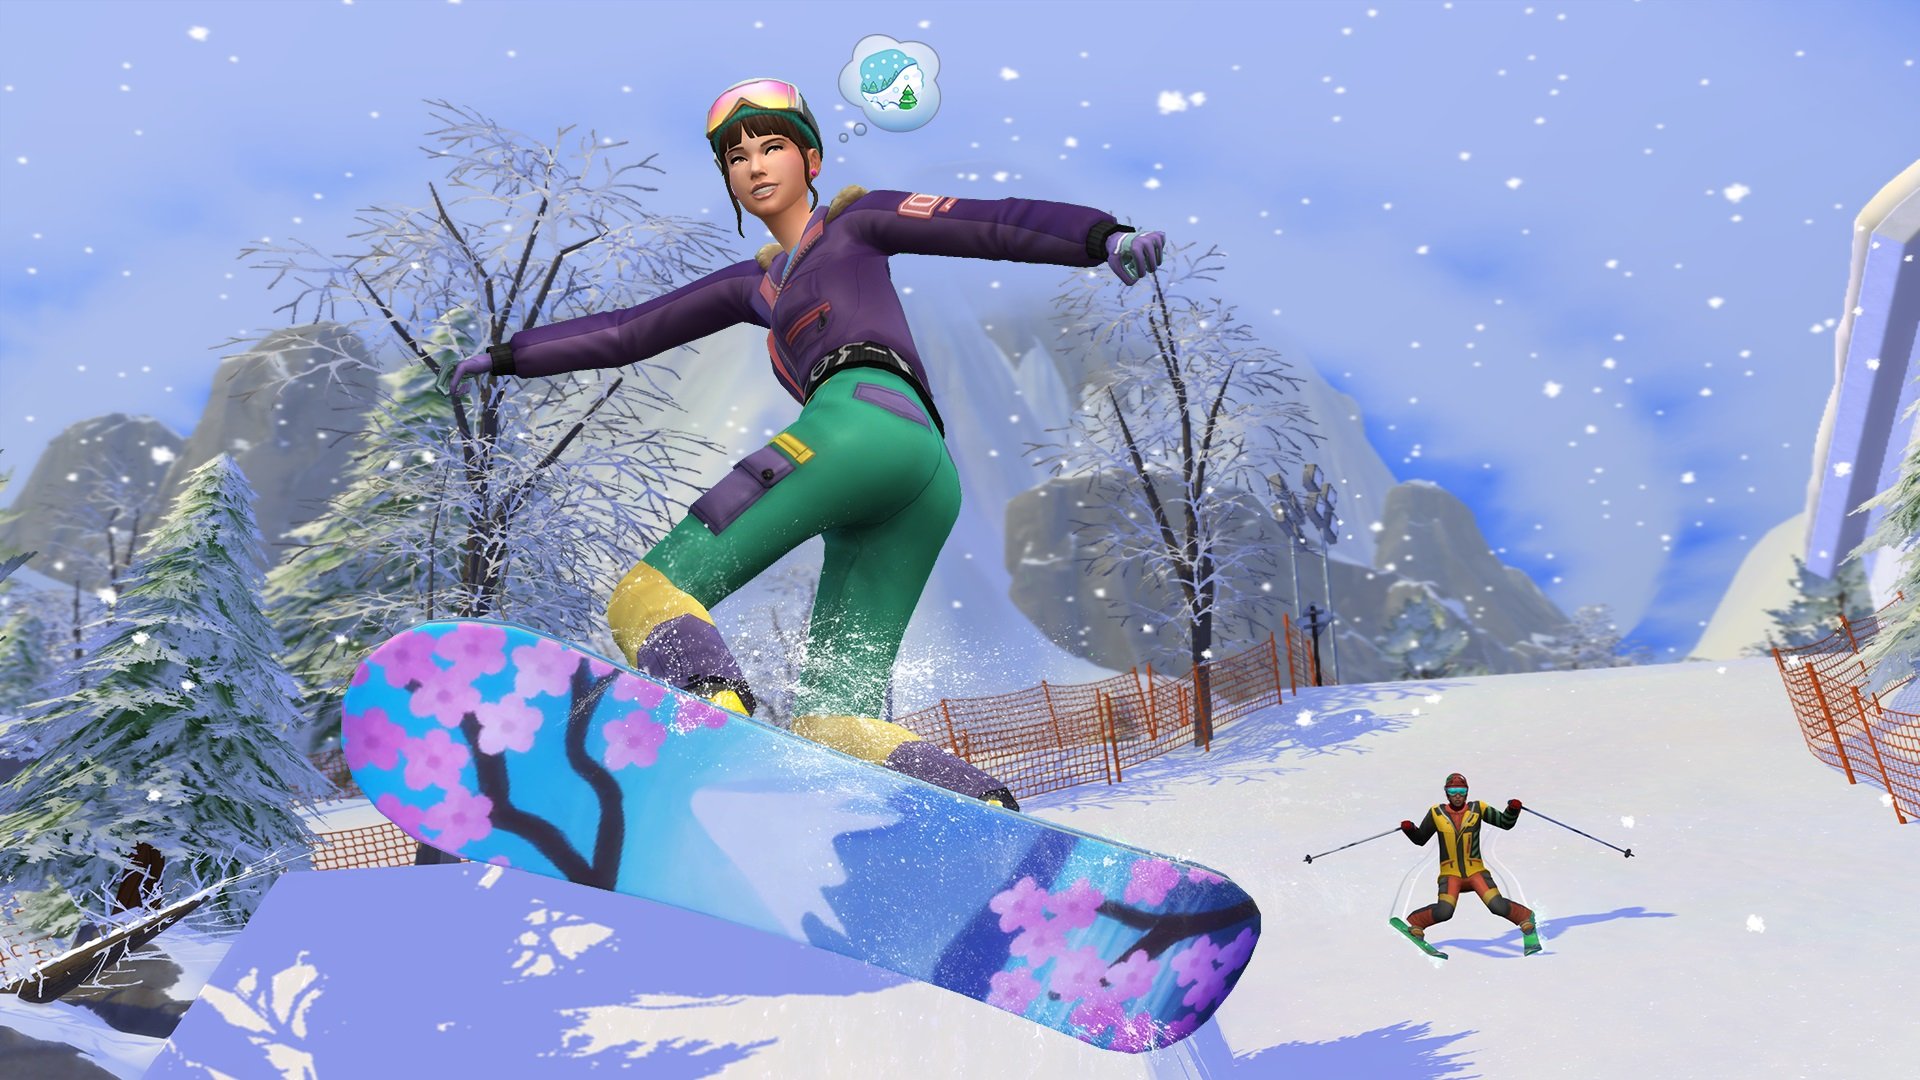 Los Sims 4 Escapada a la Nieve, disponible como prueba gratuita este fin de semana